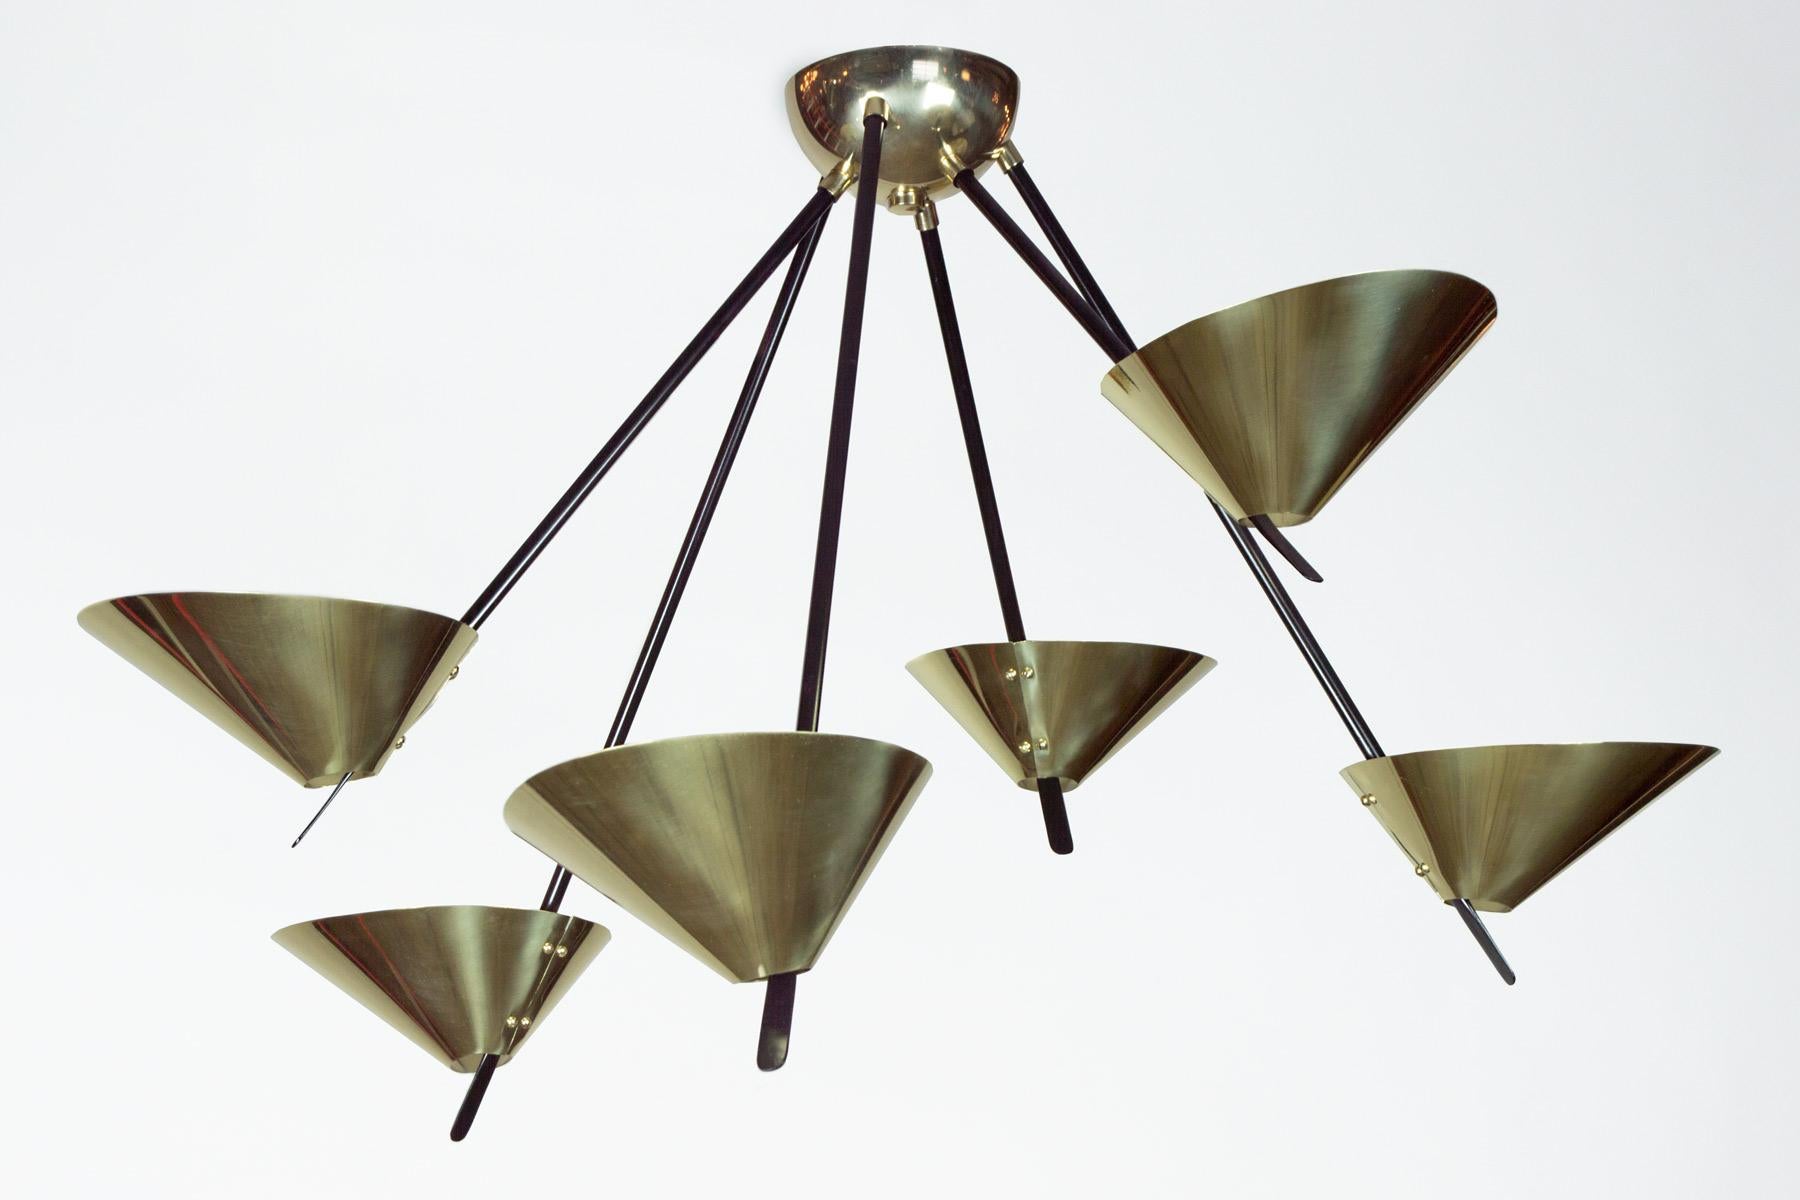 La collection Passy s'inspire fortement des designs des années 1950. Les diffuseurs en laiton poli créent une excellente source d'éclairage indirect. L'éclairage vers le haut met en valeur le cadre en acier émaillé. La collection comprenait